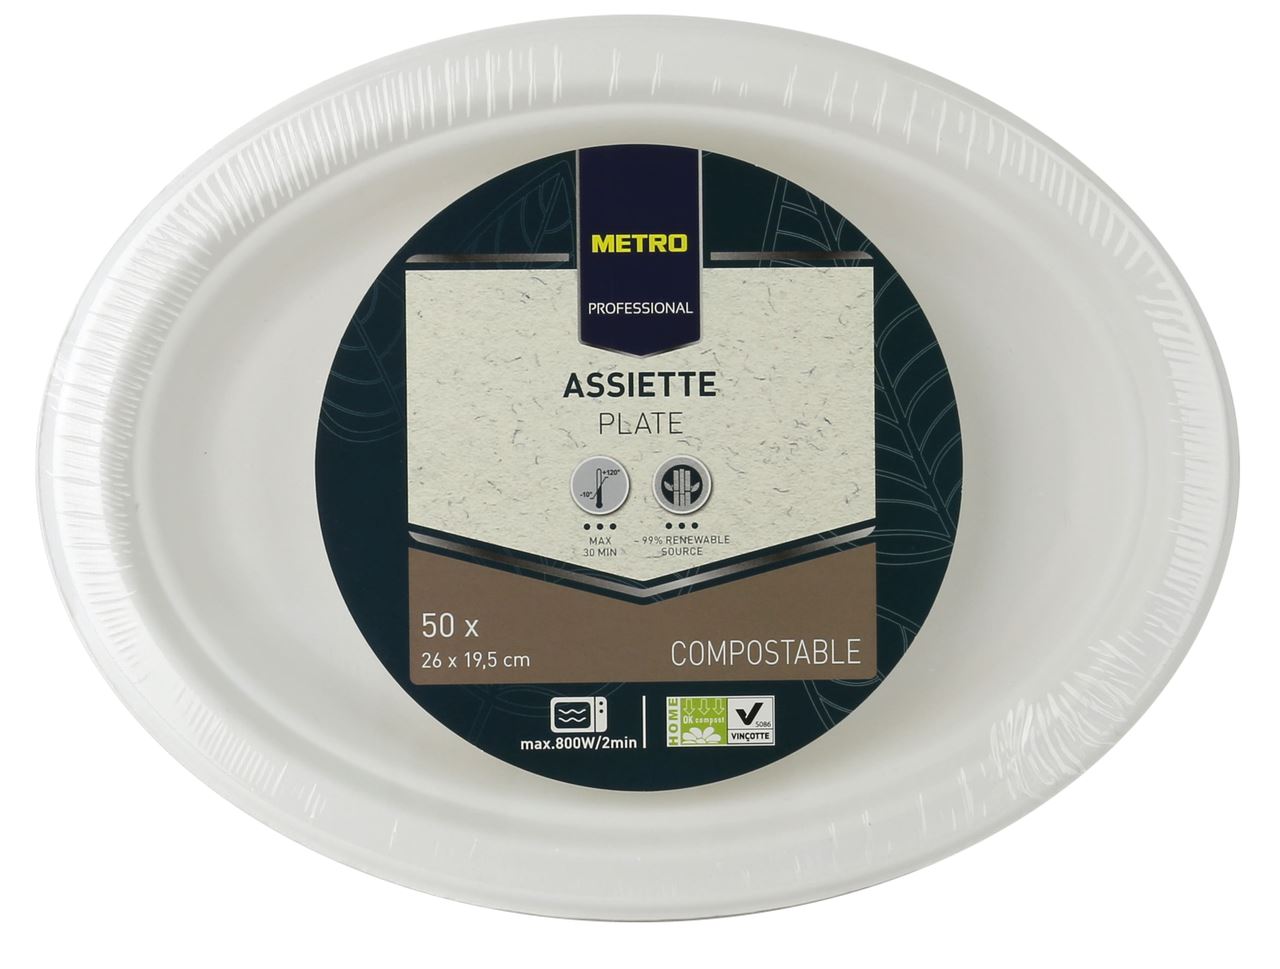 Assiette jetable ovale biodégradable blanc 26 x 19.5 cm x 50